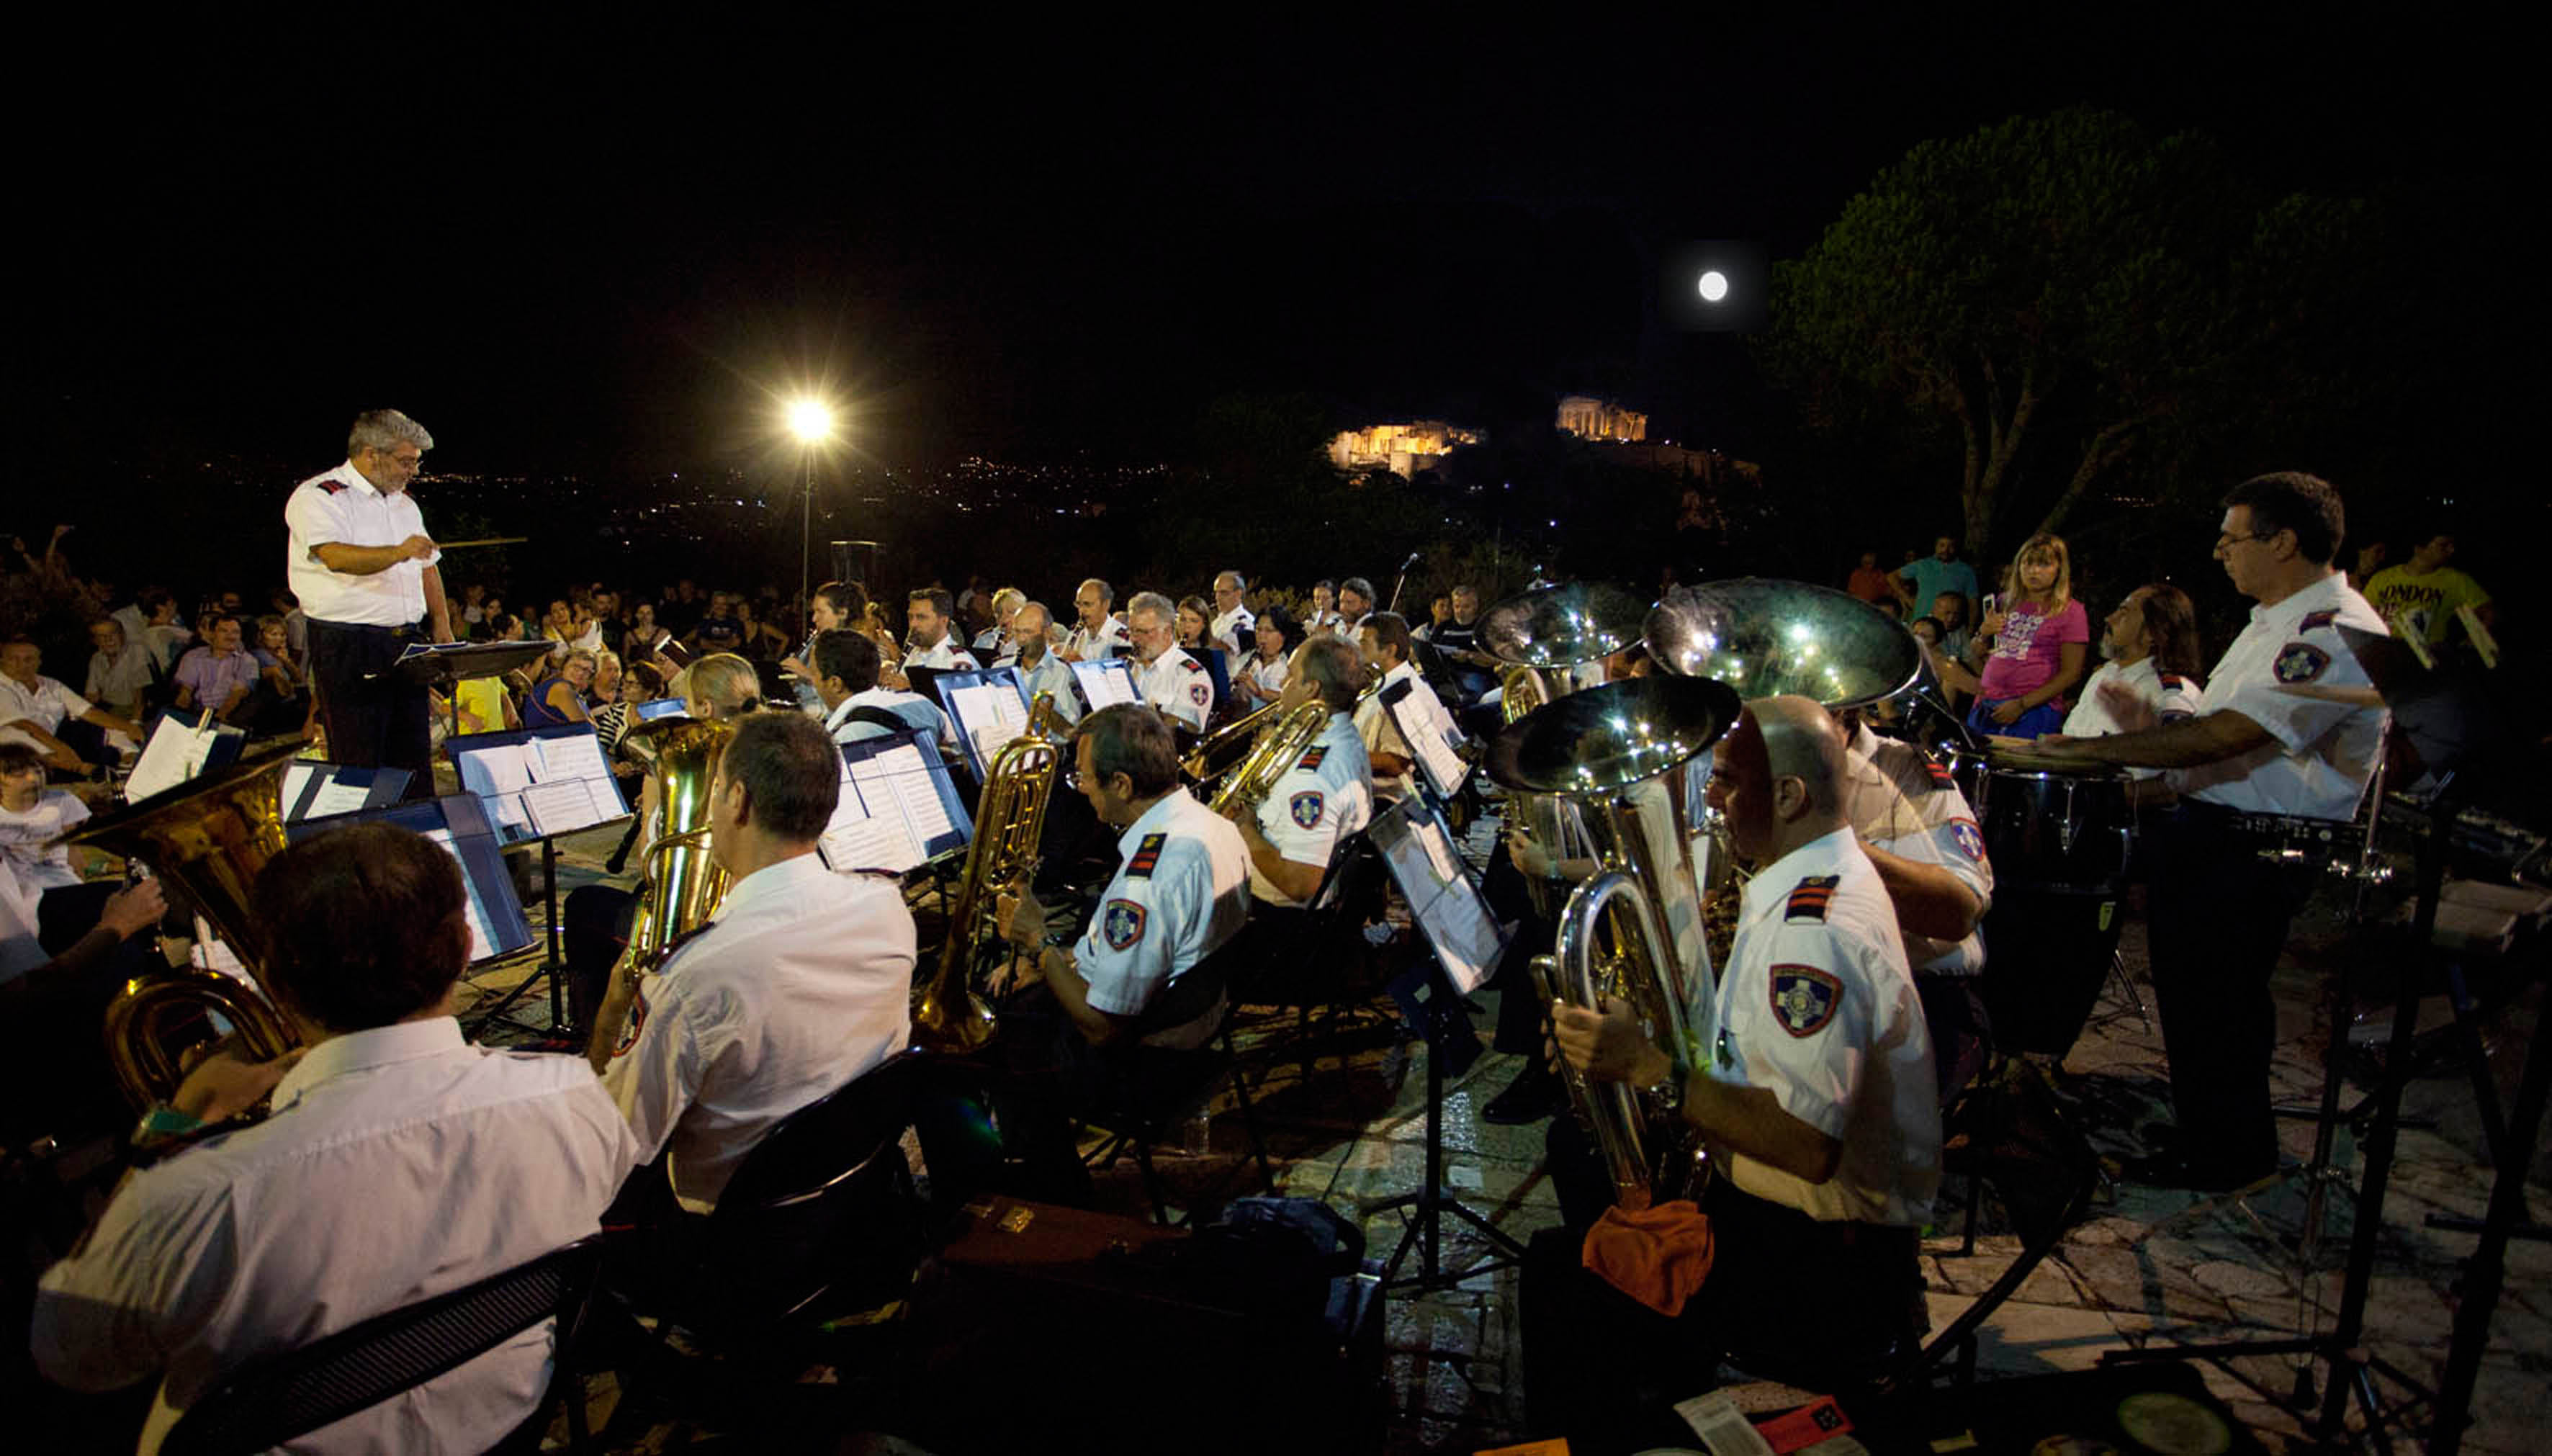 Η Φιλαρμονική Ορχήστρα του Δήμου Αθηναίων  στο Ολυμπιείο  κάτω από το Αυγουστιάτικο φεγγάρι